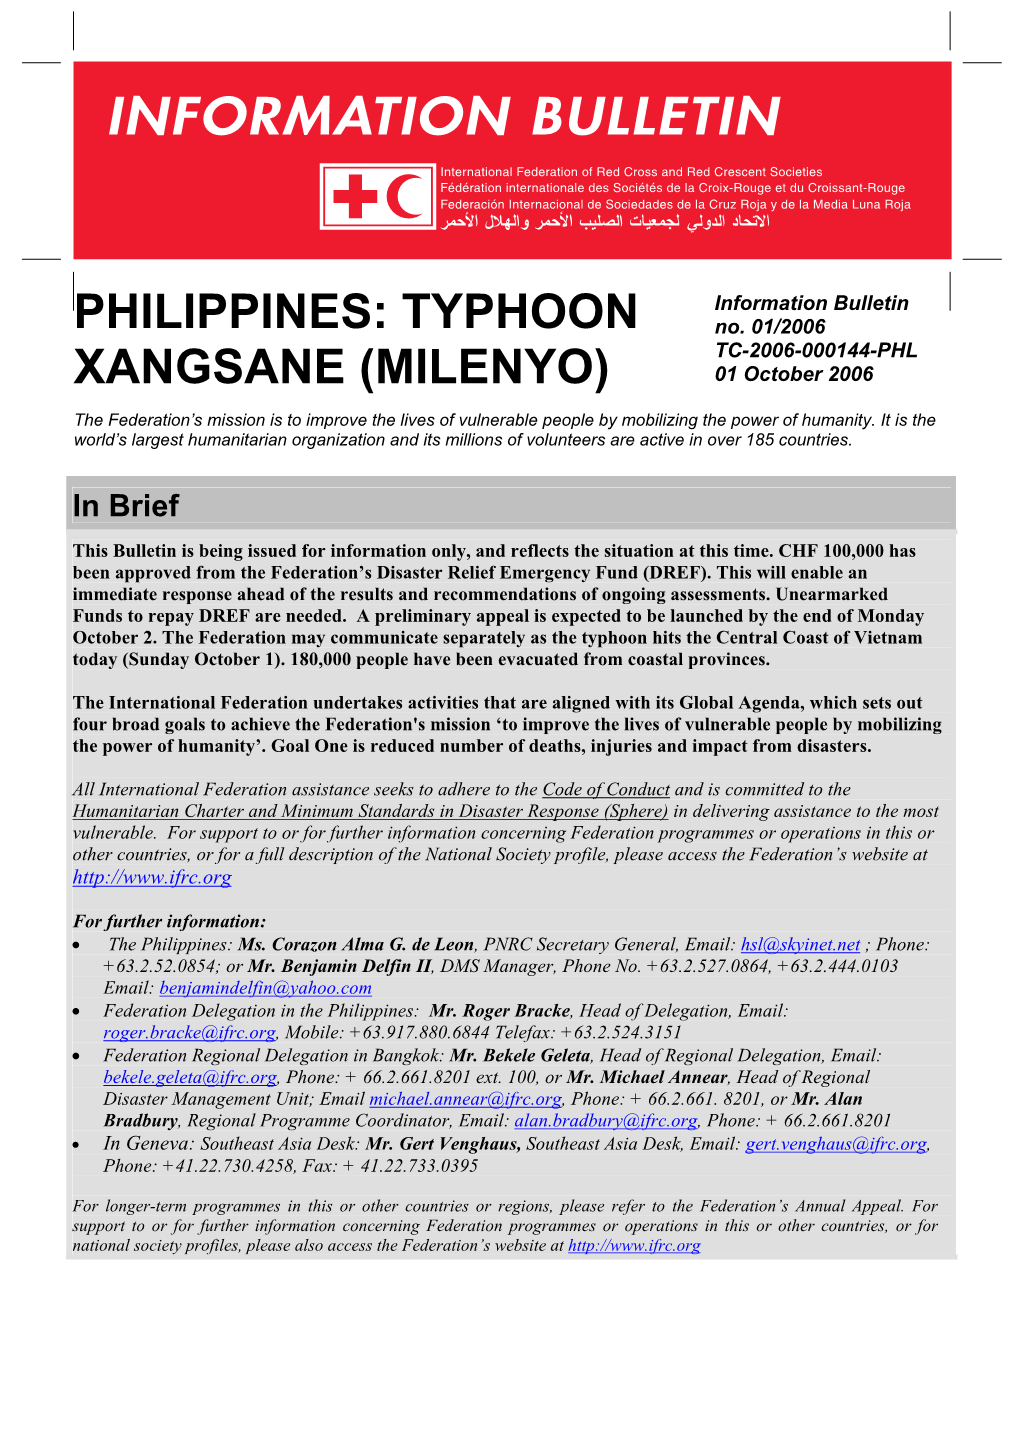 Typhoon Xangsane (Milenyo)